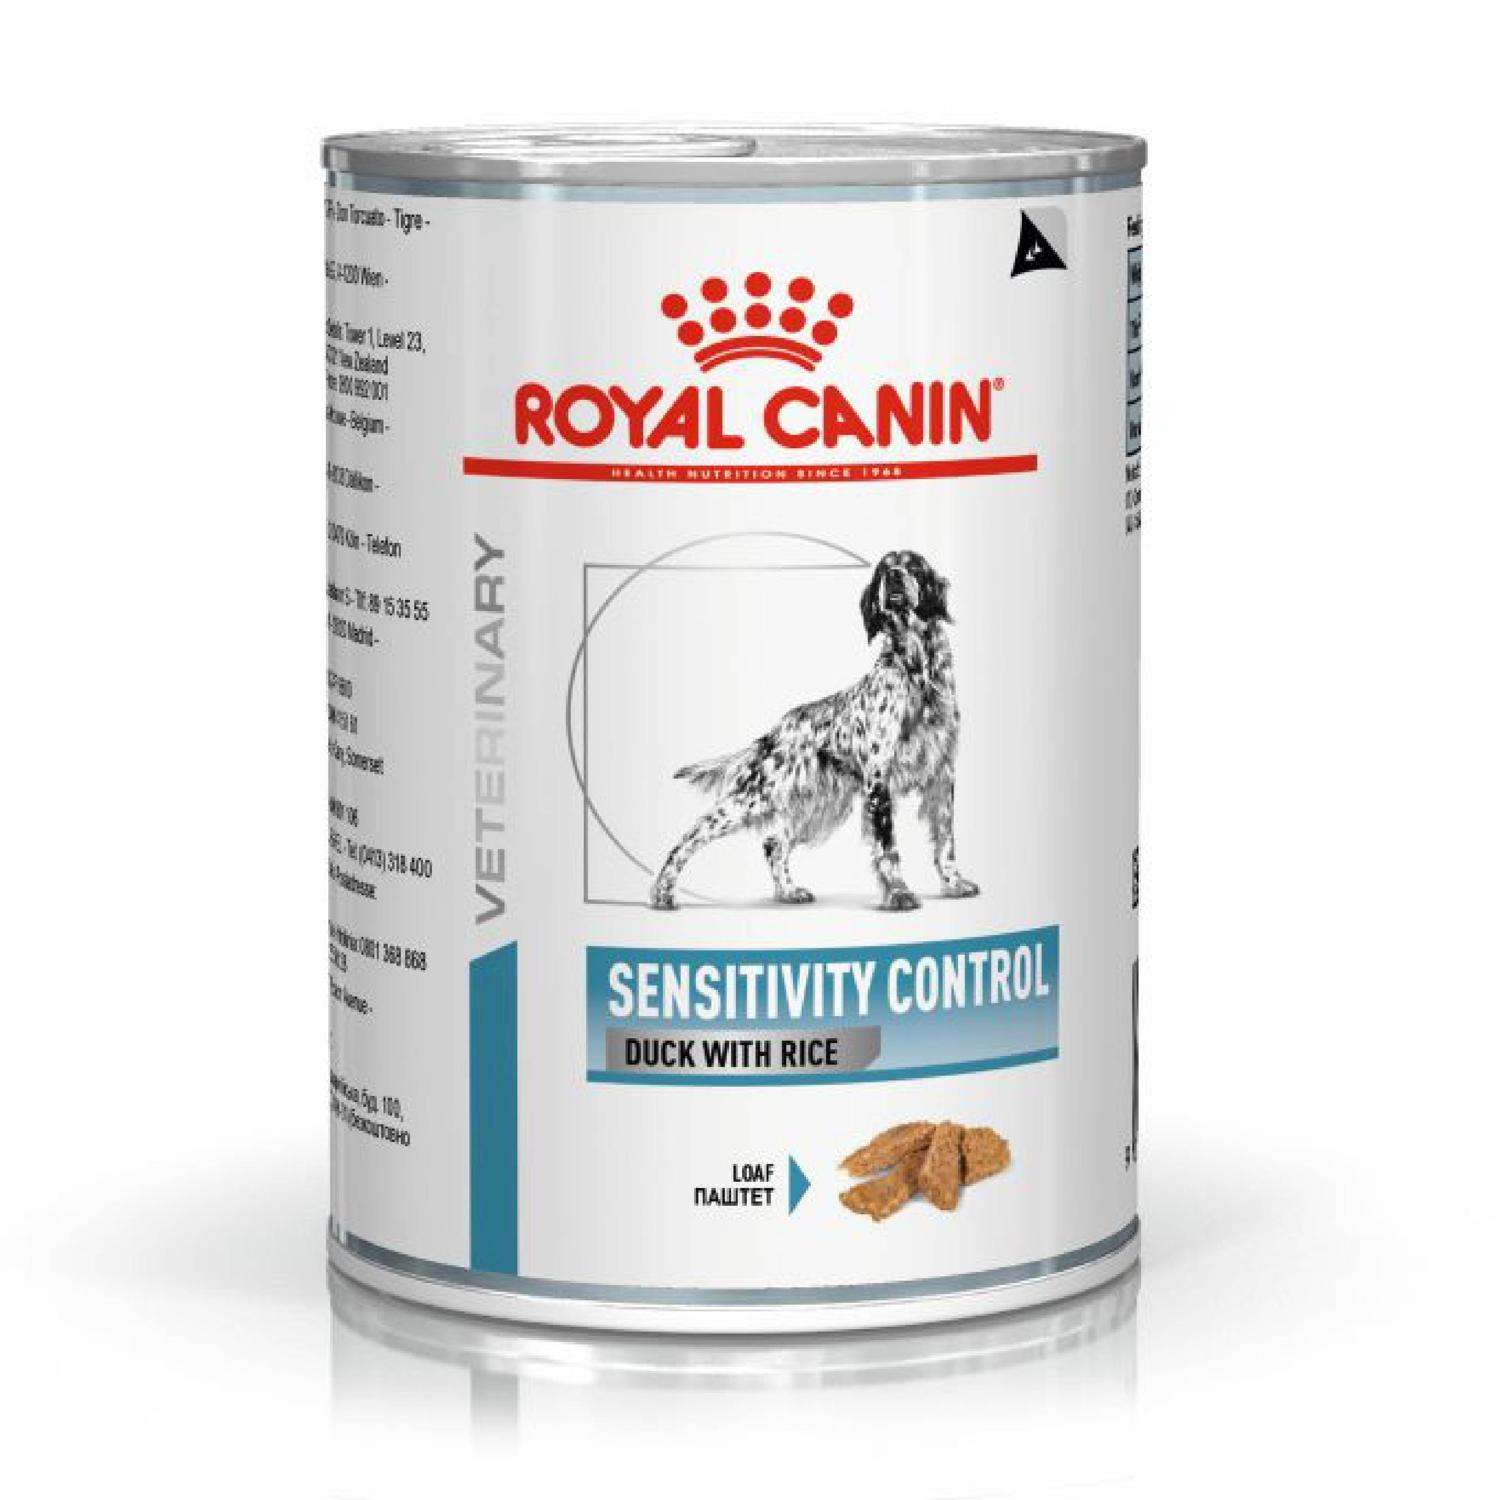 Гастро купить для собак влажный корм интестинал. Royal Canin Gastrointestinal для собак Low fat. Royal Canin Gastro intestinal для собак. Влажный Gastrointestinal Low fat Роял Канин. Роял Канин гастро Интестинал Лоу фэт для собак сухой корм.